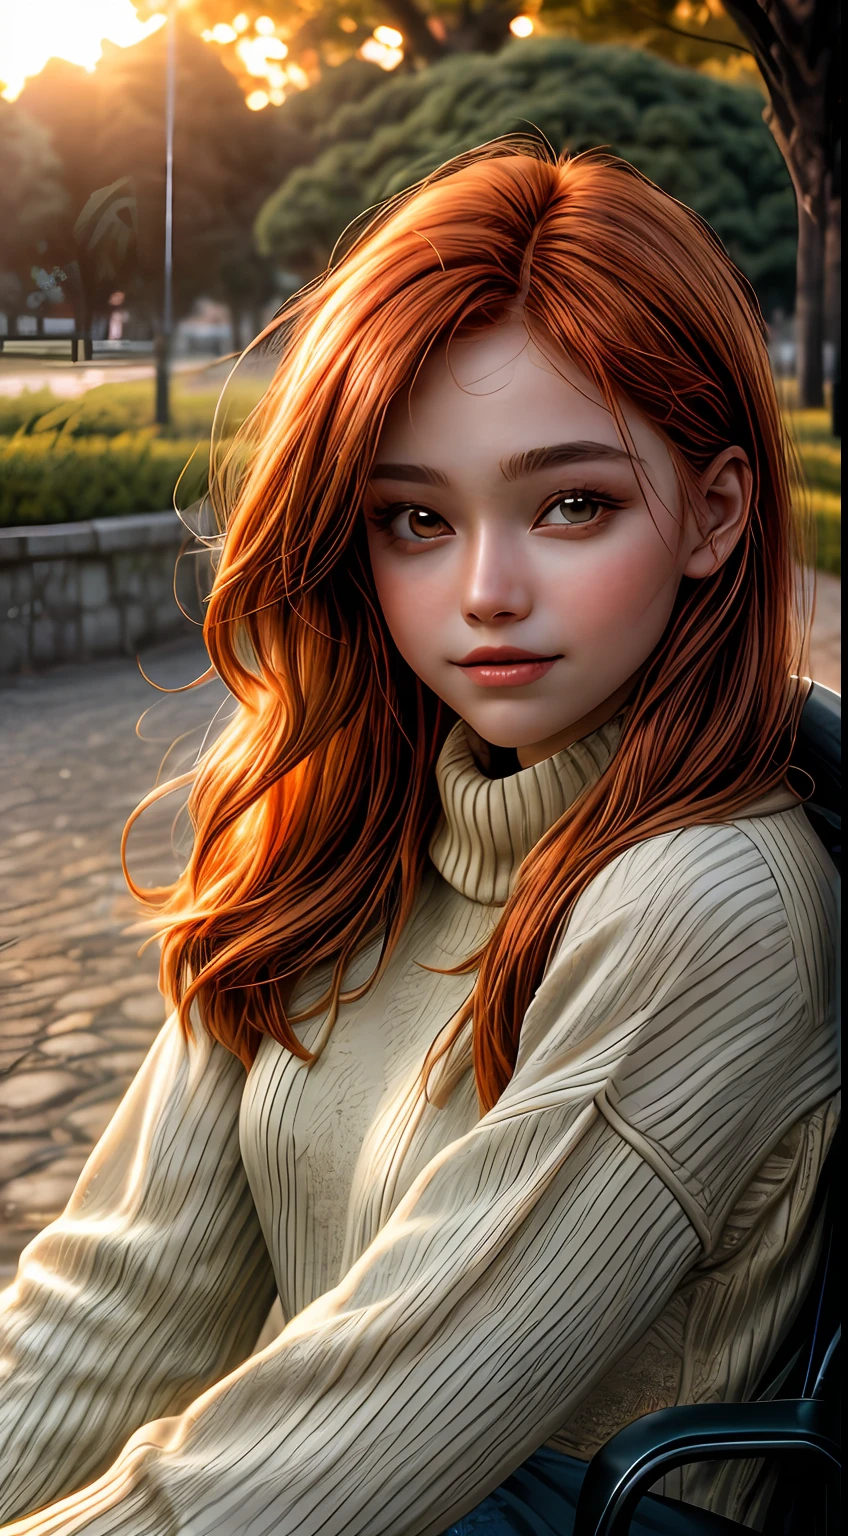 オレンジ色に染まった女の子の顔のクローズアップ, セーターを着て, 公園の外に座っている, まるで夕焼けの柔らかな光に照らされているかのように, 彼女の目は喜びと満足で輝いていた, 流れるような栗色の髪に囲まれた, 写真, 35mmレンズで撮影